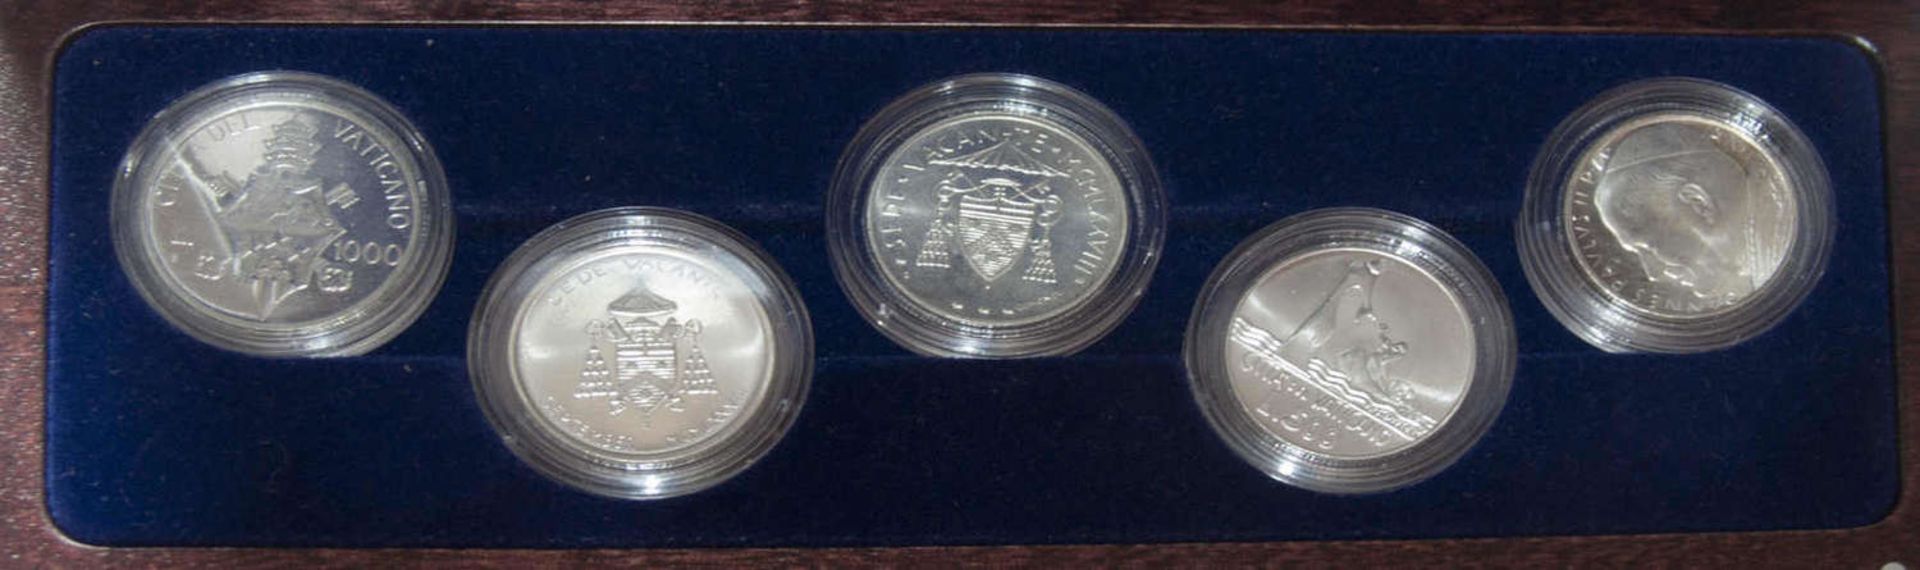 Vatikan 1978-2008, Silber - Münz - Set "30 Jahre 3 - Päpste - Jahr 1979 - 2008". Limitiert auf 300